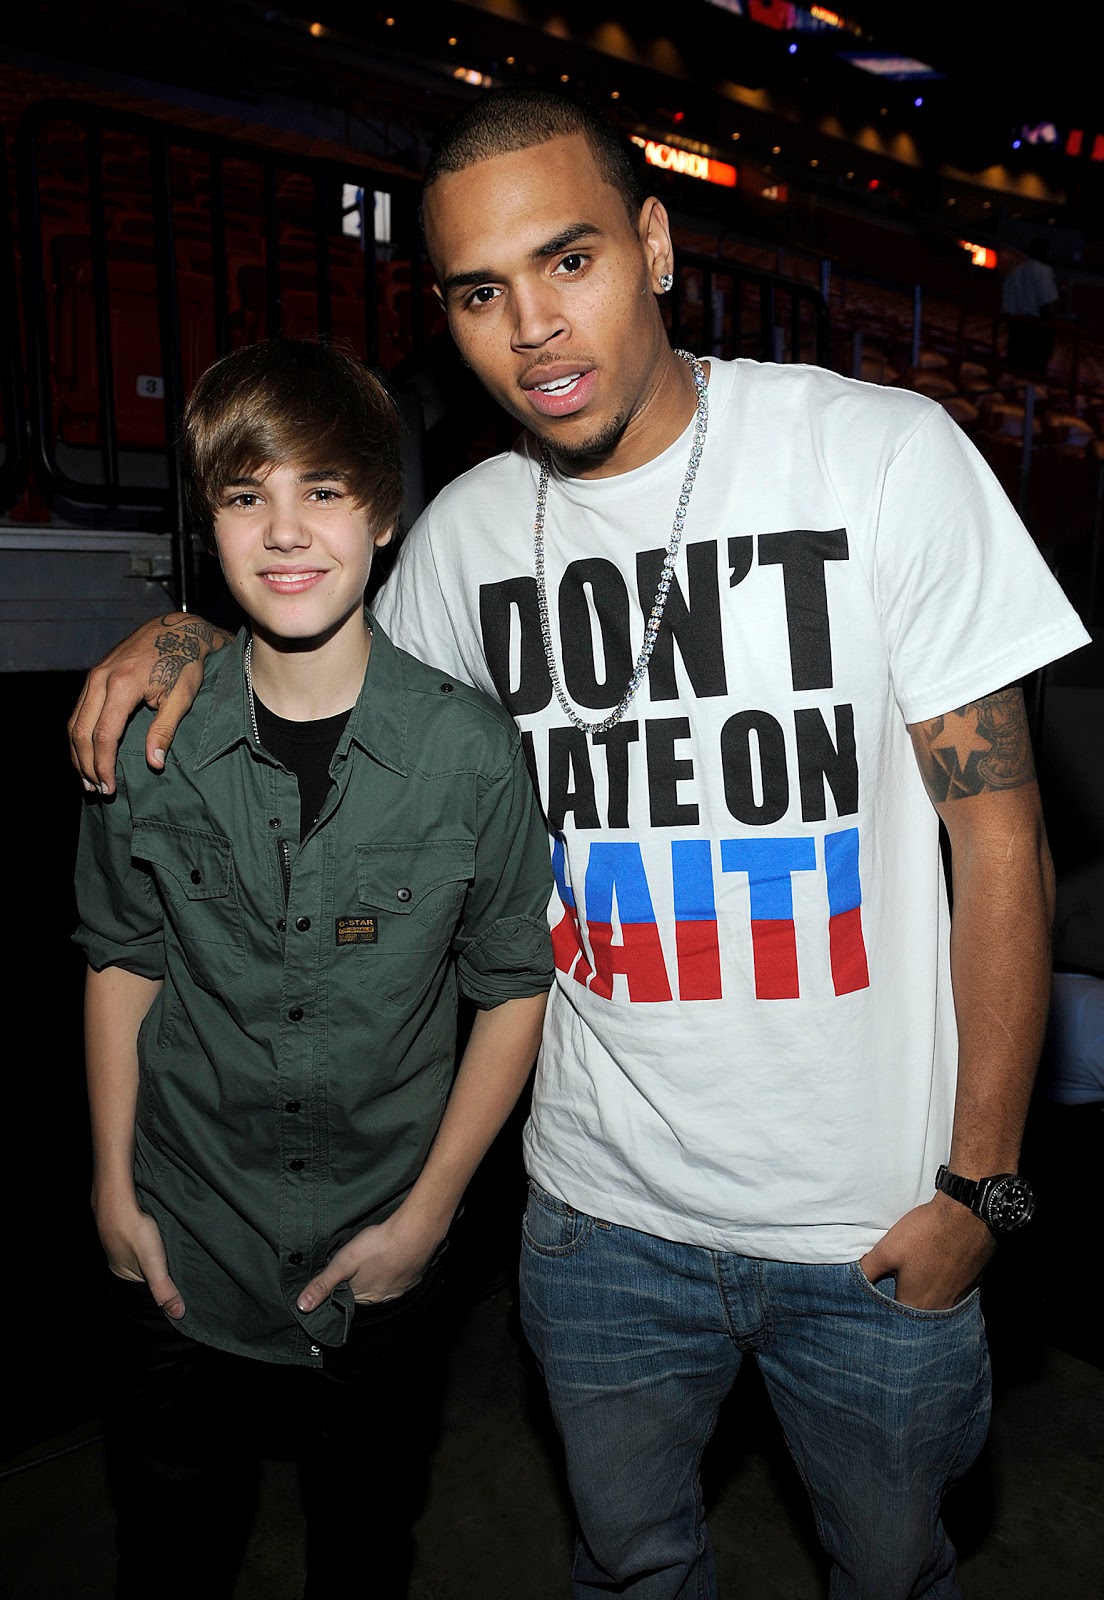 http://2.bp.blogspot.com/_LuWjJndtkUk/TRim8MxoiFI/AAAAAAAADXc/SmVPVrATDaE/s1600/Justin-Bieber-and-Chris-Brown.jpg